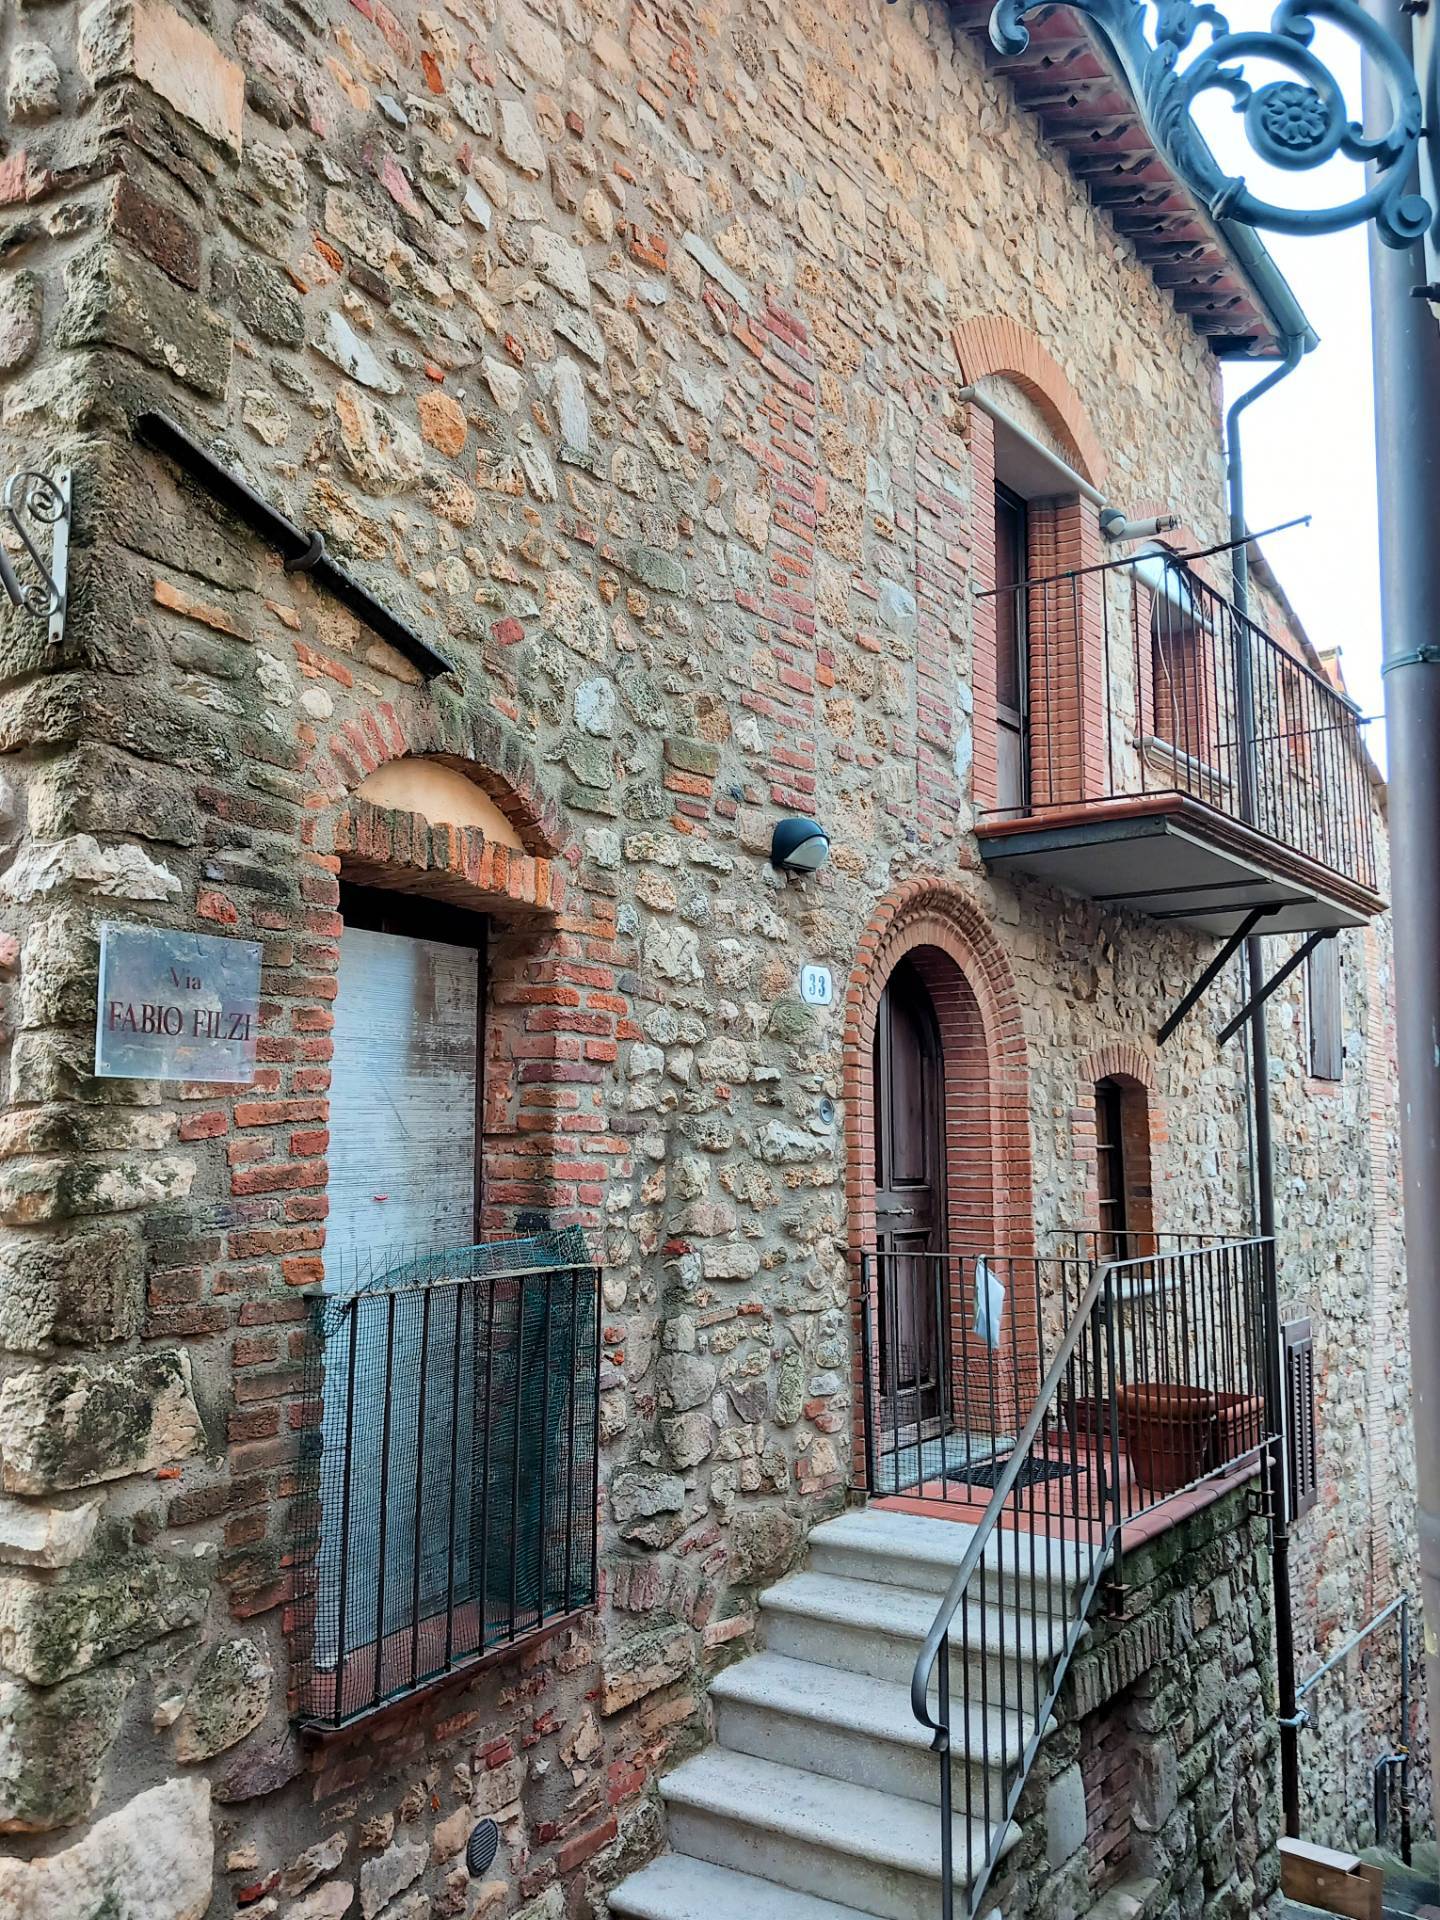 1369-Terratetto in stile rustico Toscano ristrutturato-Gavorrano-1 Agenzia Immobiliare ASIP